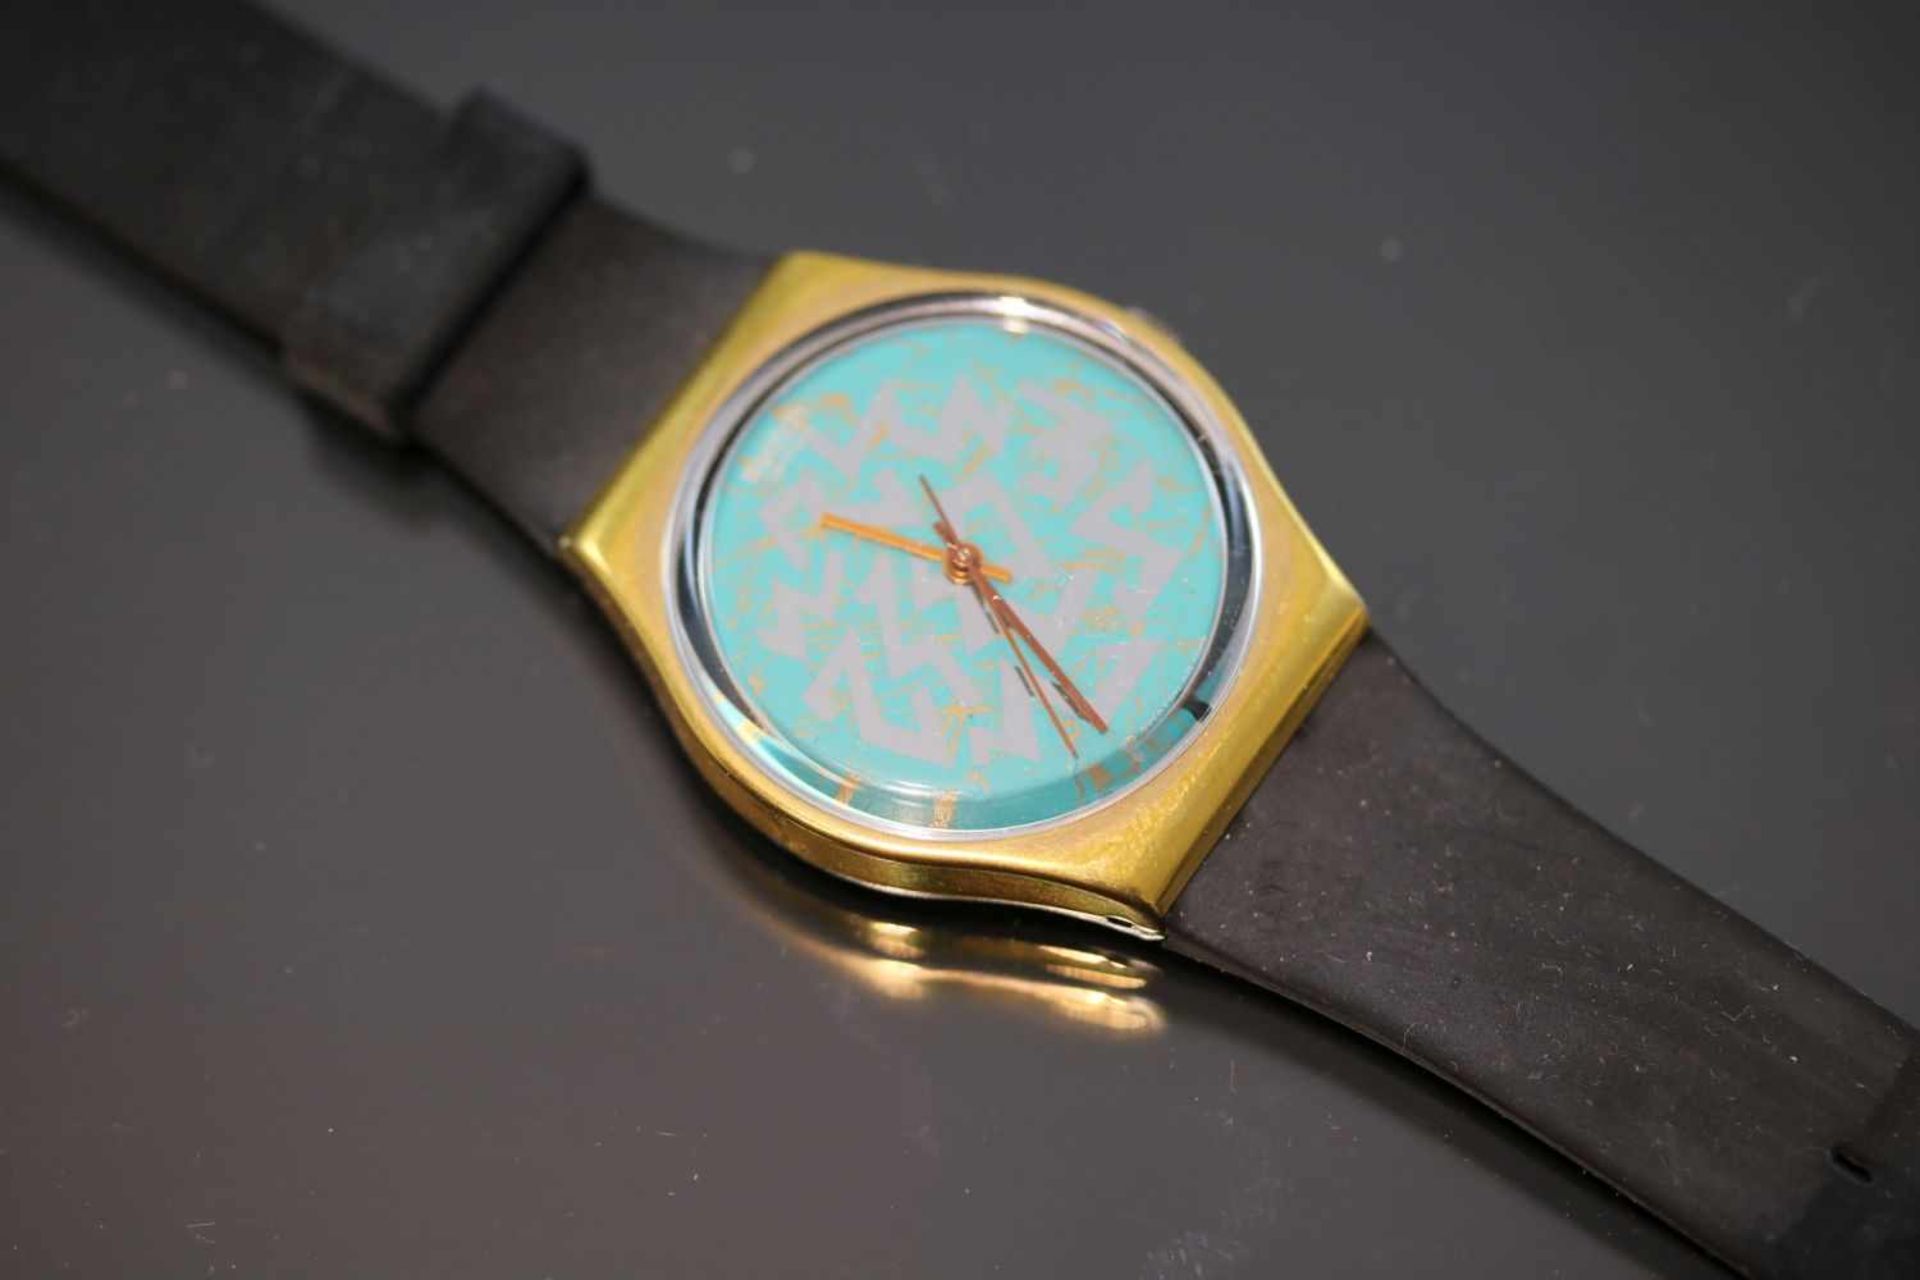 Swatch & Art-Uhr Quartz-Werk Silikon-Band Gehäusedurchmesser: 34 mm- - -25.00 % buyer's premium on